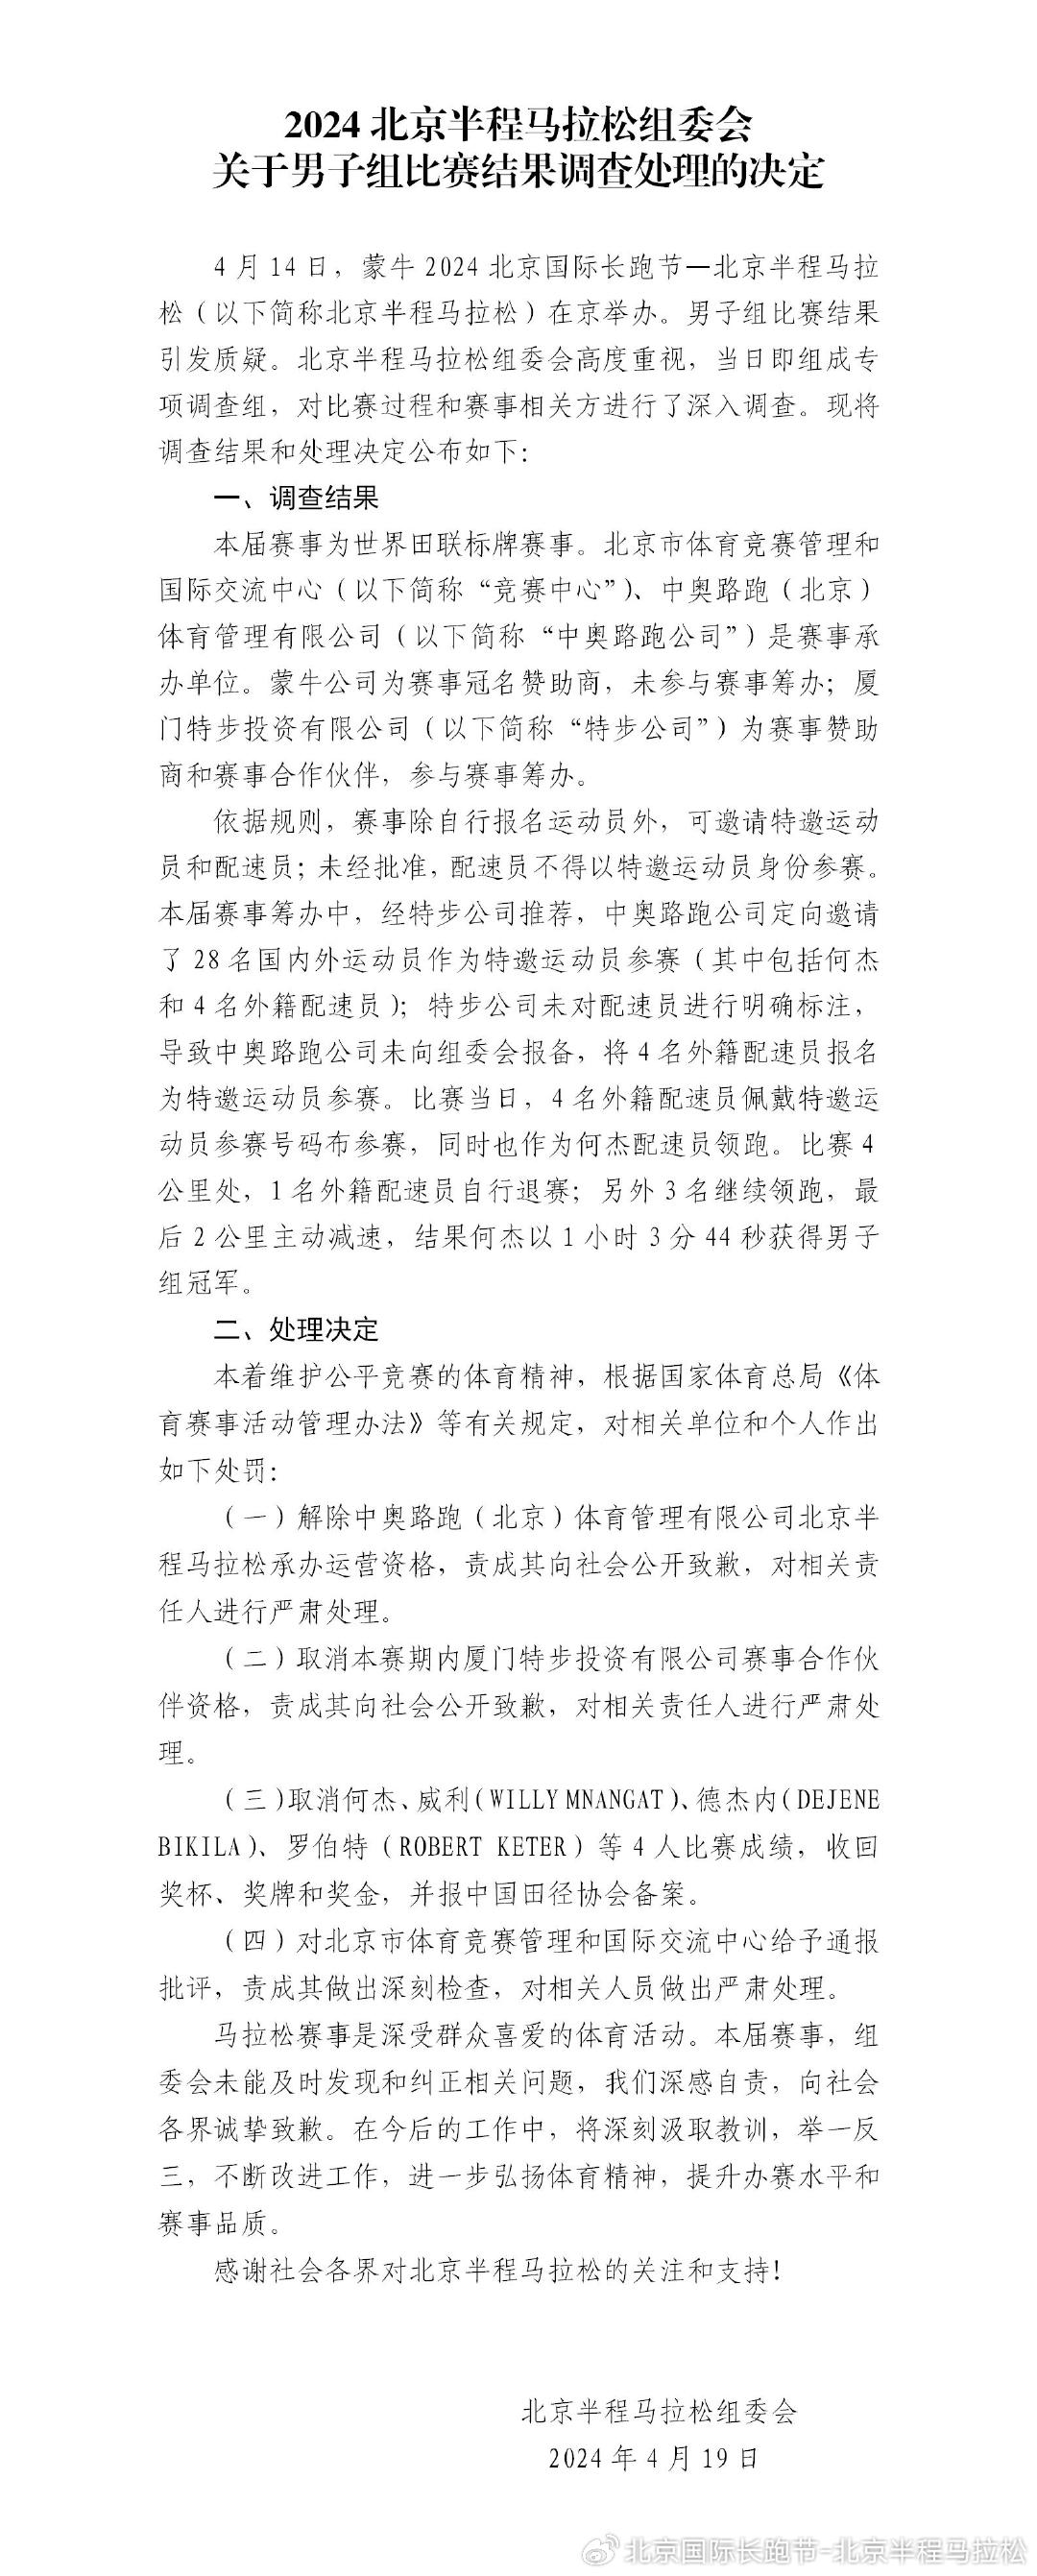 北京半程马拉松组委会发布男人组角逐查询拜访处置成果